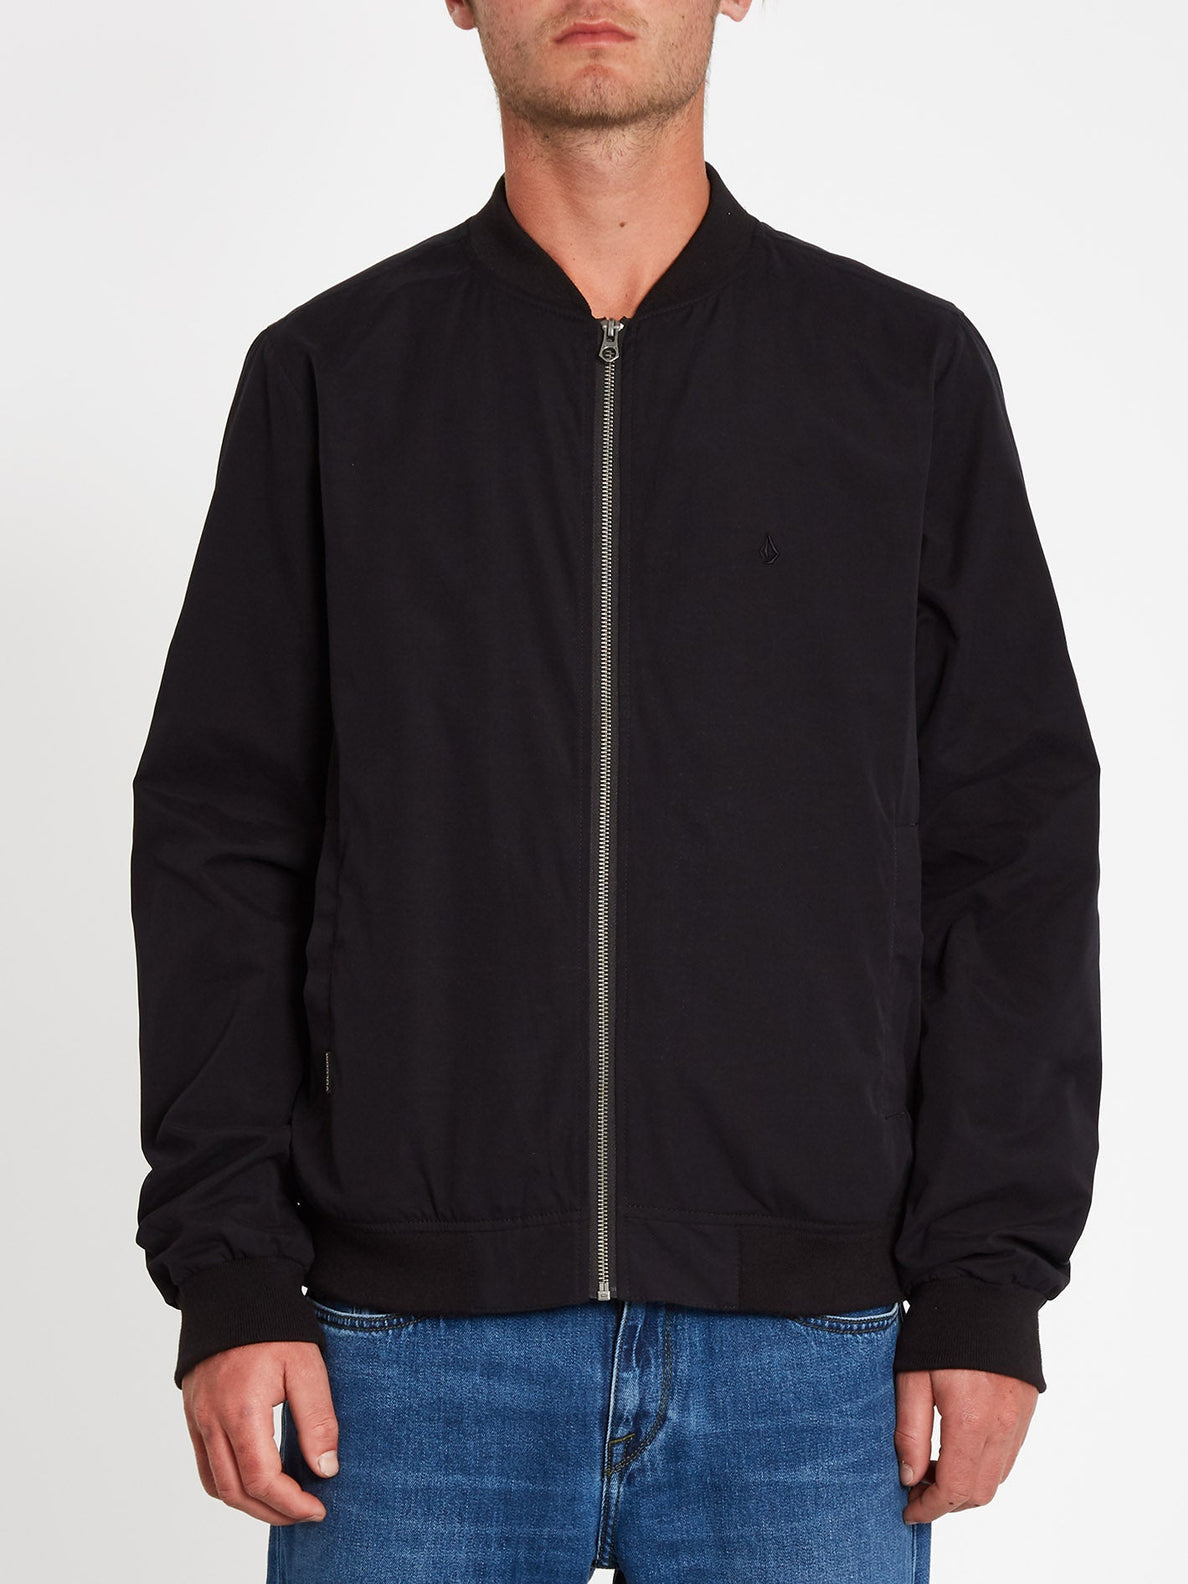 Kurze Blouson Jacke ohne Drucke oder Stickereien mit breiten Bündchen und flachen sportlichen Kragen, Farbe Schwarz